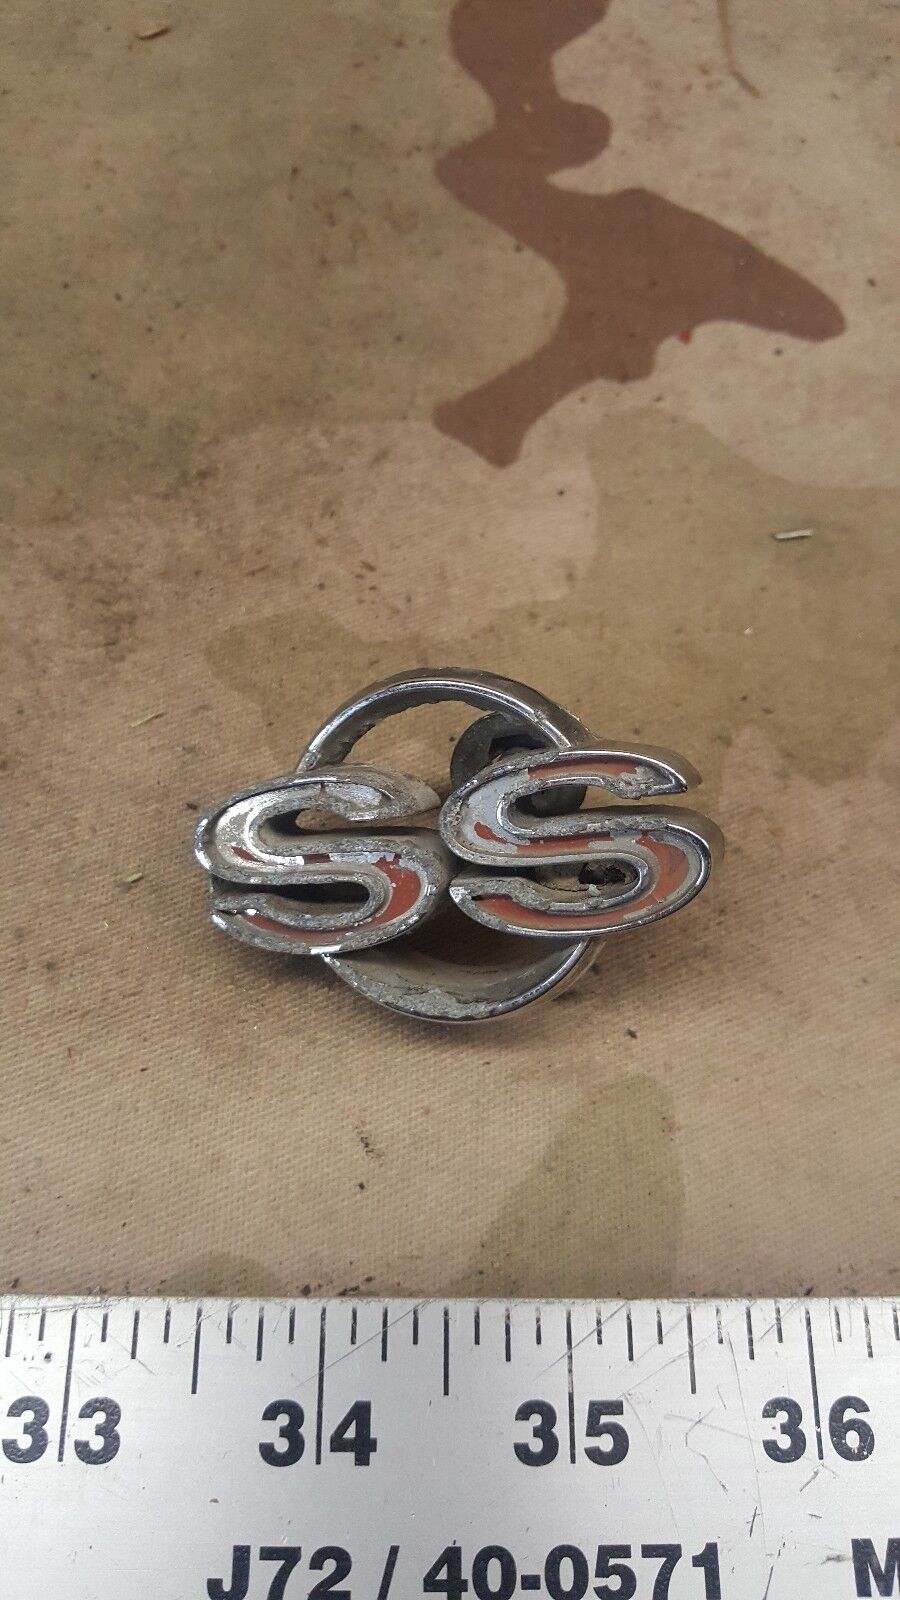 Vintage SS Emblem Badge